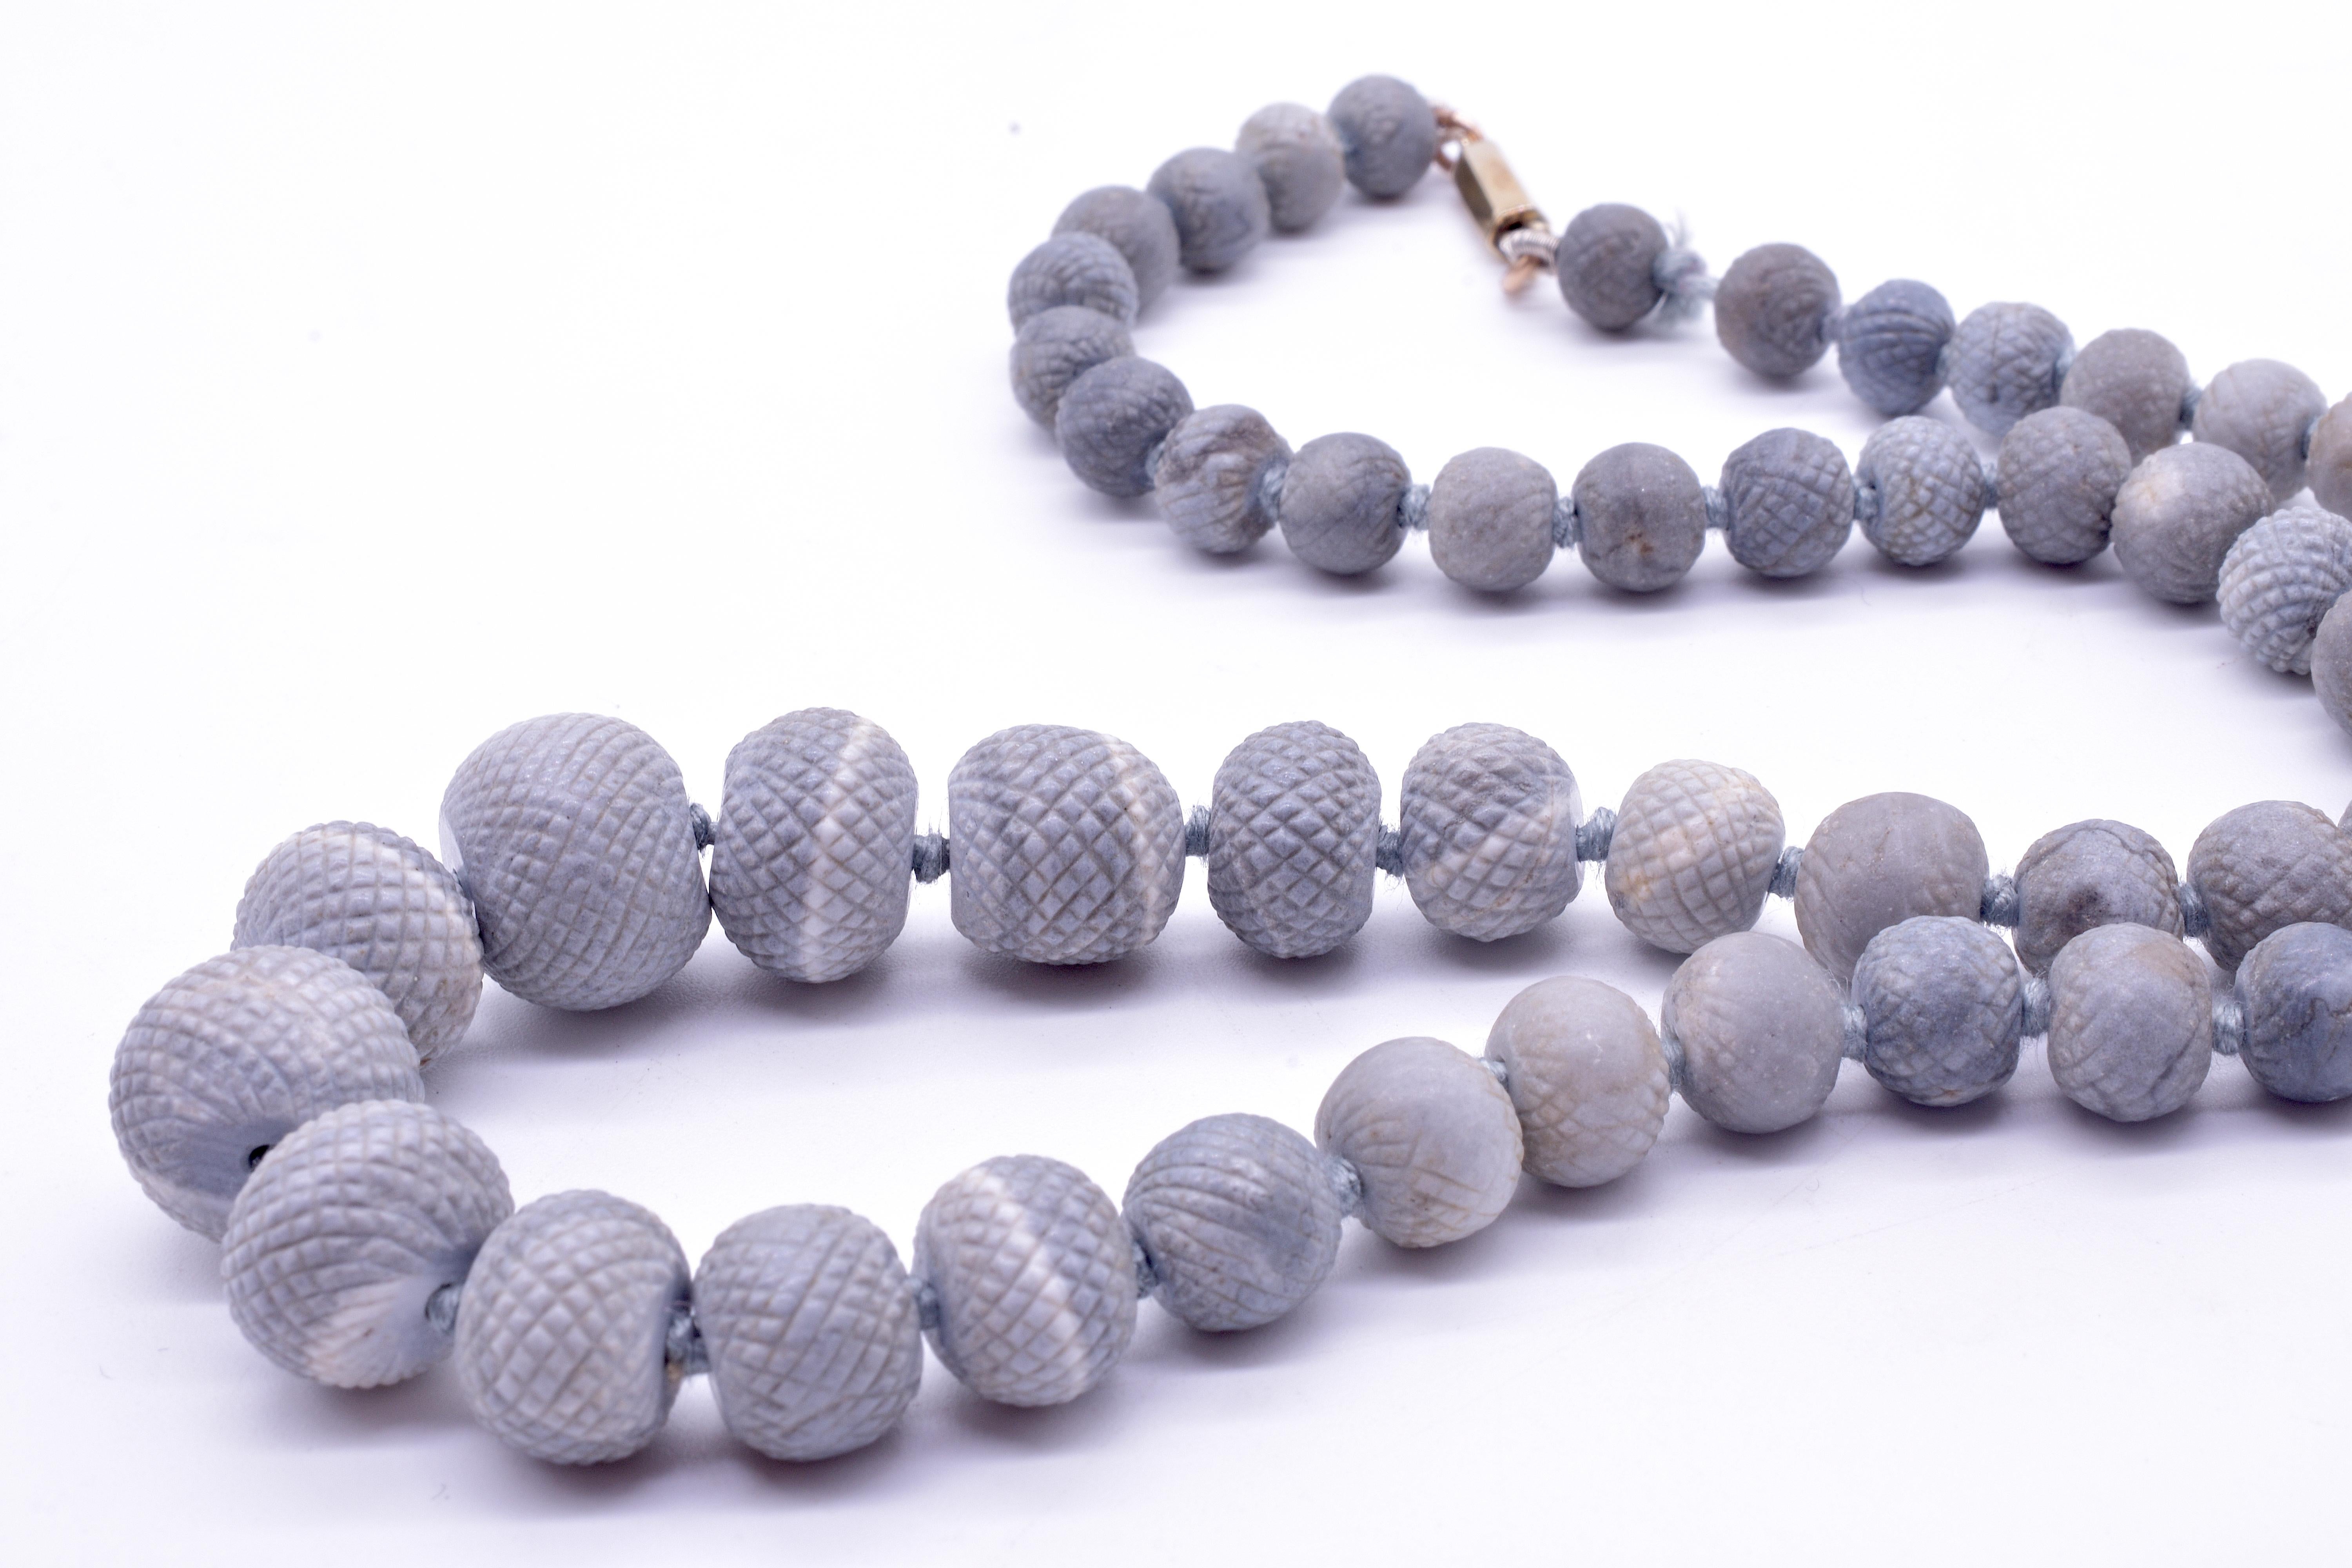 Jolies perles de lave grise rare extraites des ruines de Pompéi en Italie. L'ananas était un symbole de luxe dans les années 1700 et a été introduit en Europe depuis l'Asie dans les années 1600. Les bijoux en lave étaient fabriqués à partir de la